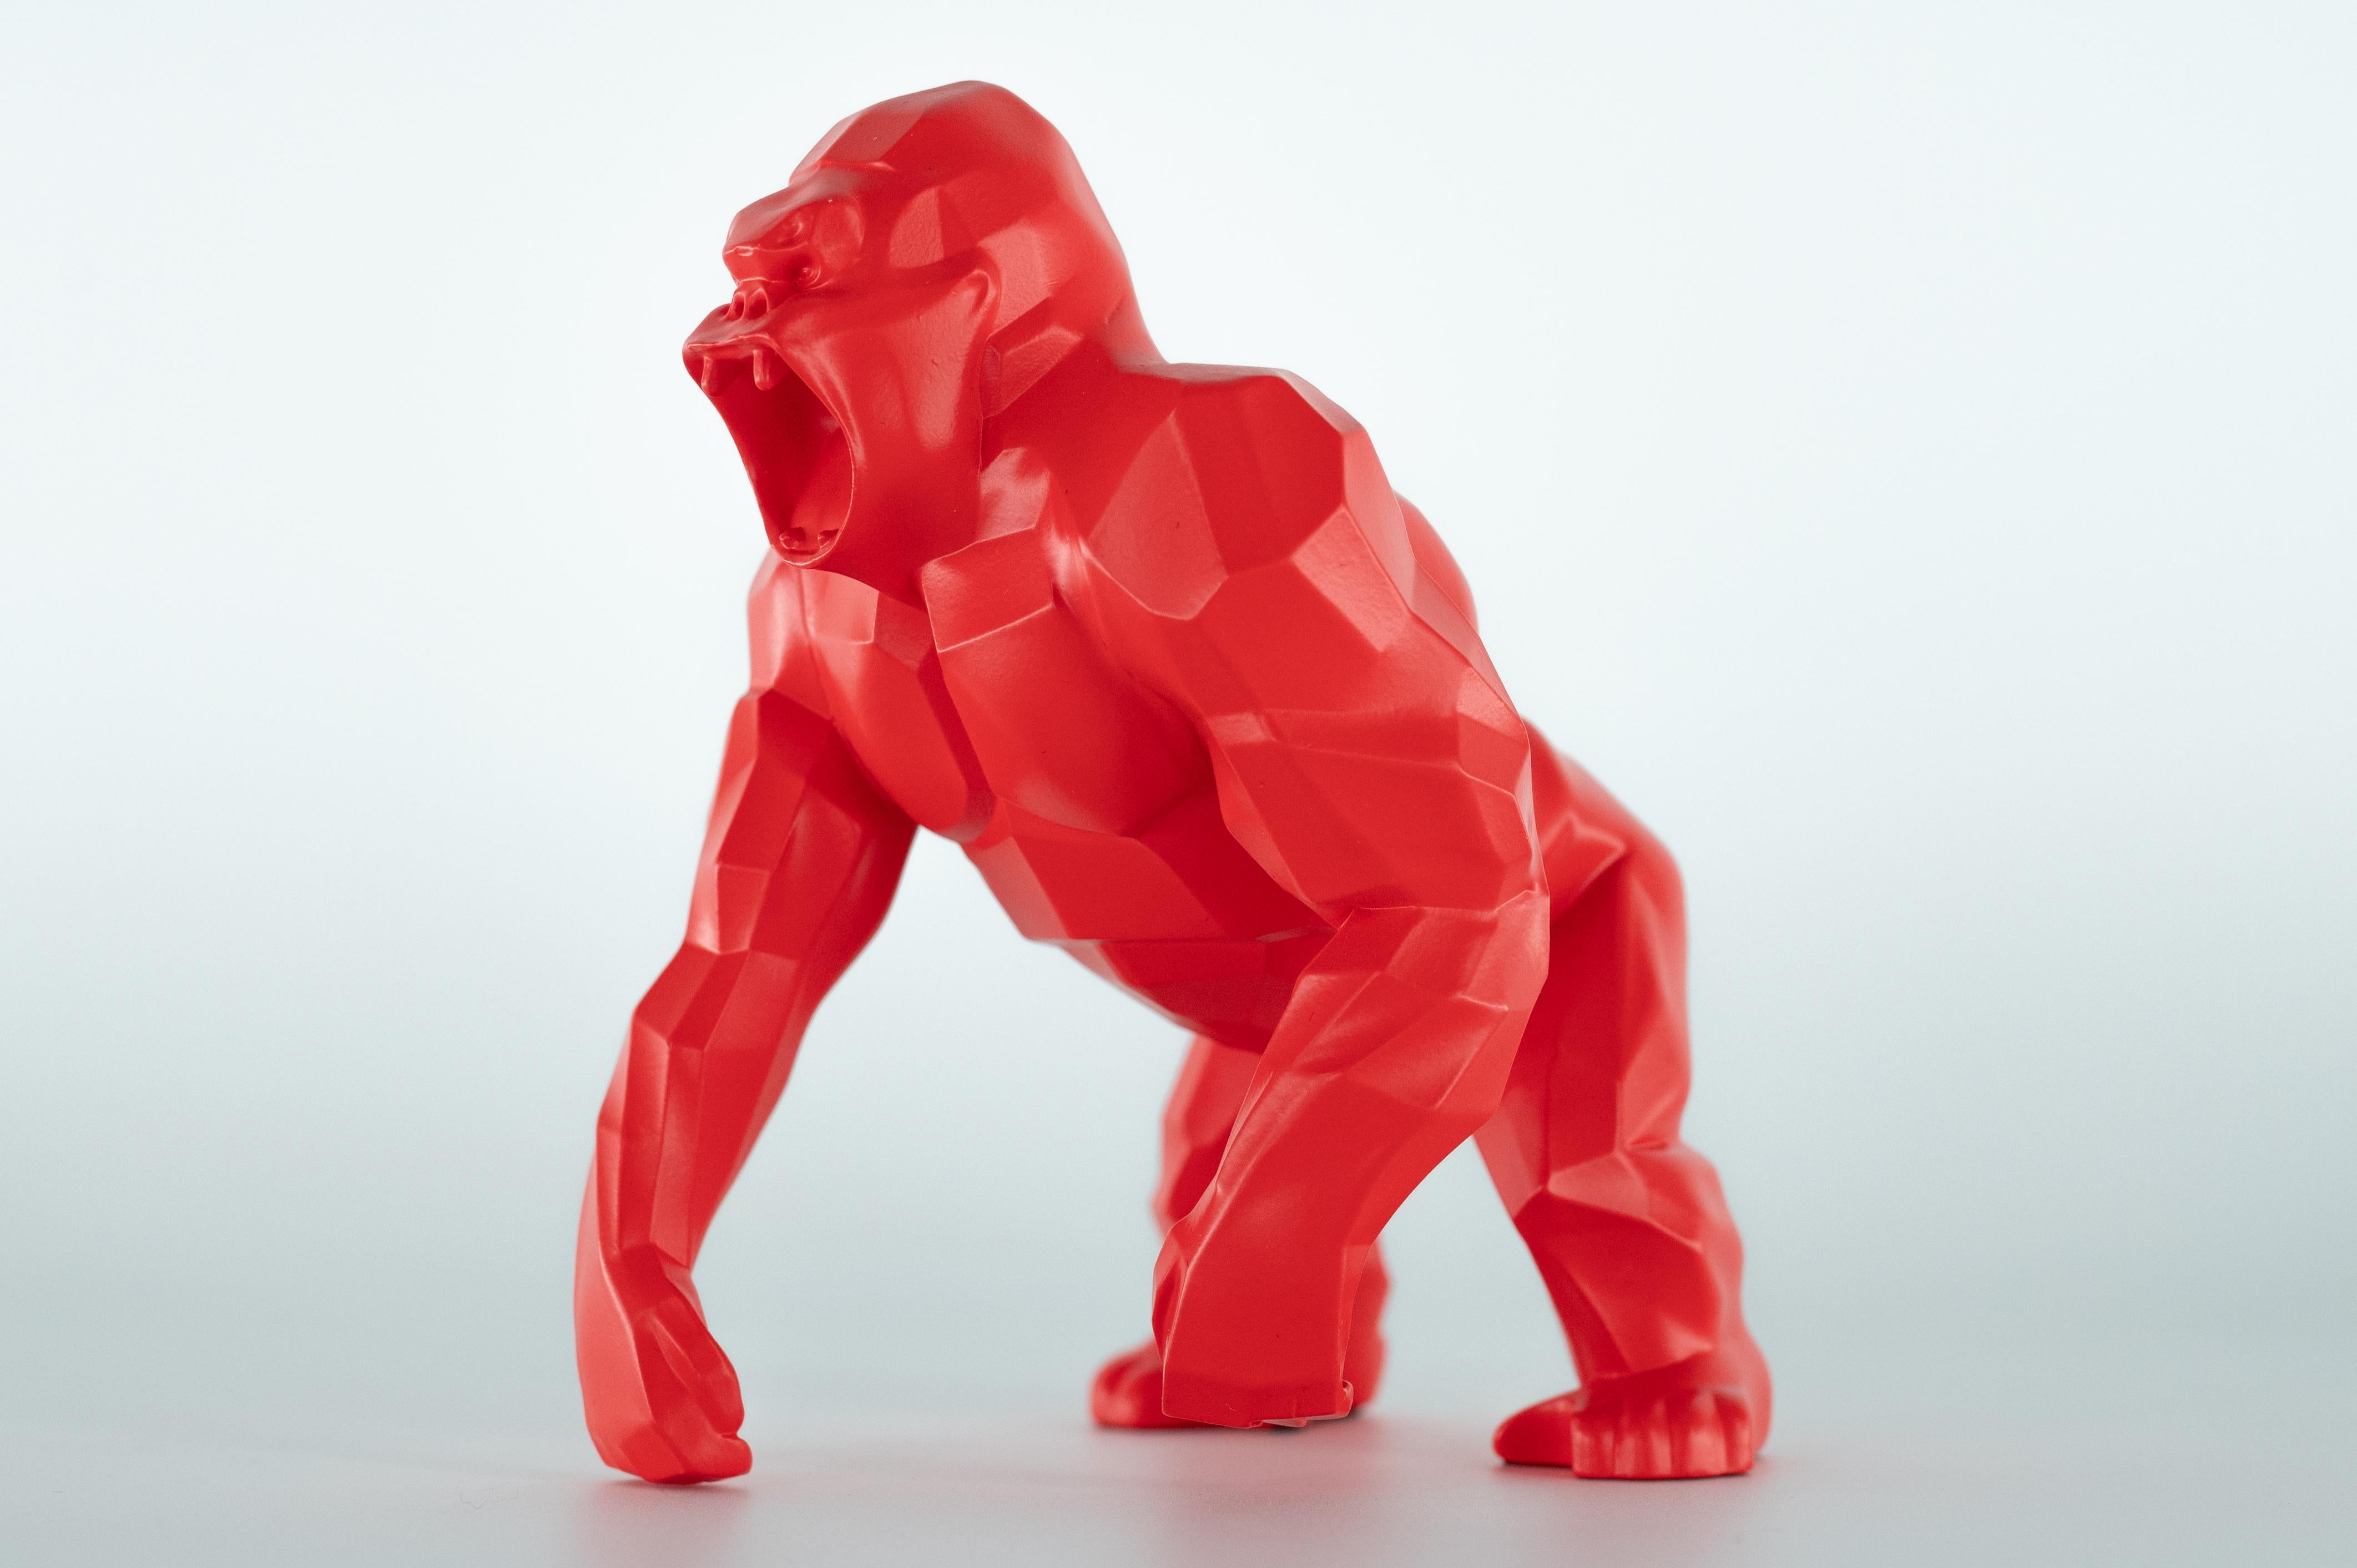 Richard ORLINSKI
Kong Origin (Rote Matte Edition)

Skulptur aus Harz
Mattes Rot
Etwa 21 x 15 x 14 cm (ca. 8,2 x 5,9 x 5,5 Zoll)
Präsentiert in Originalverpackung mit Zertifikat

Ausgezeichneter Zustand